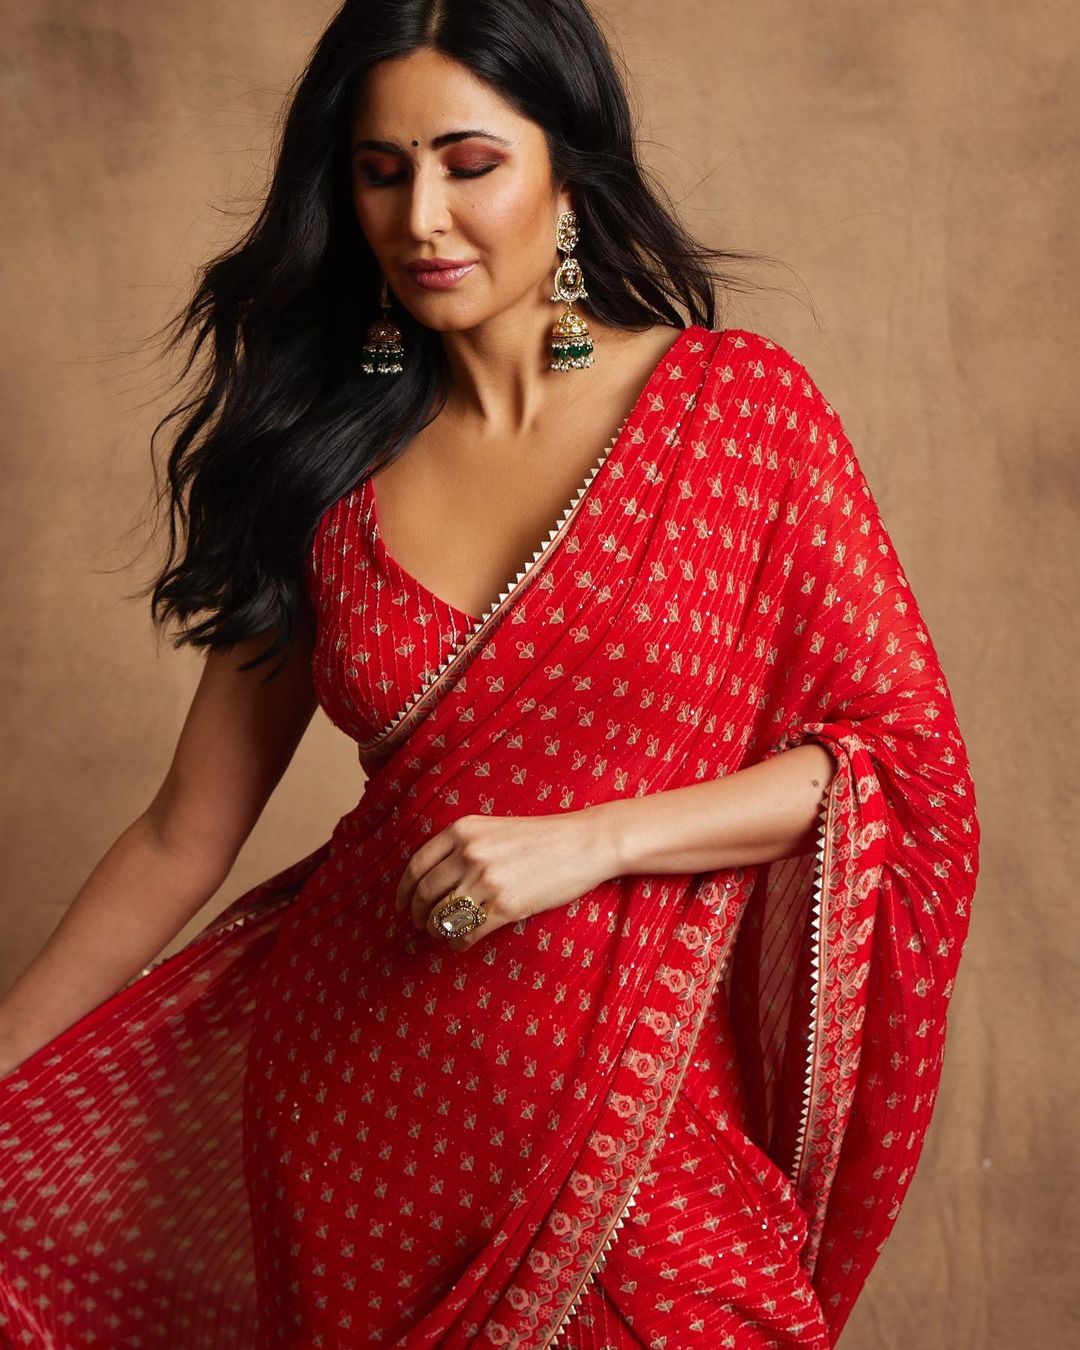 A beautiful woman in red sari